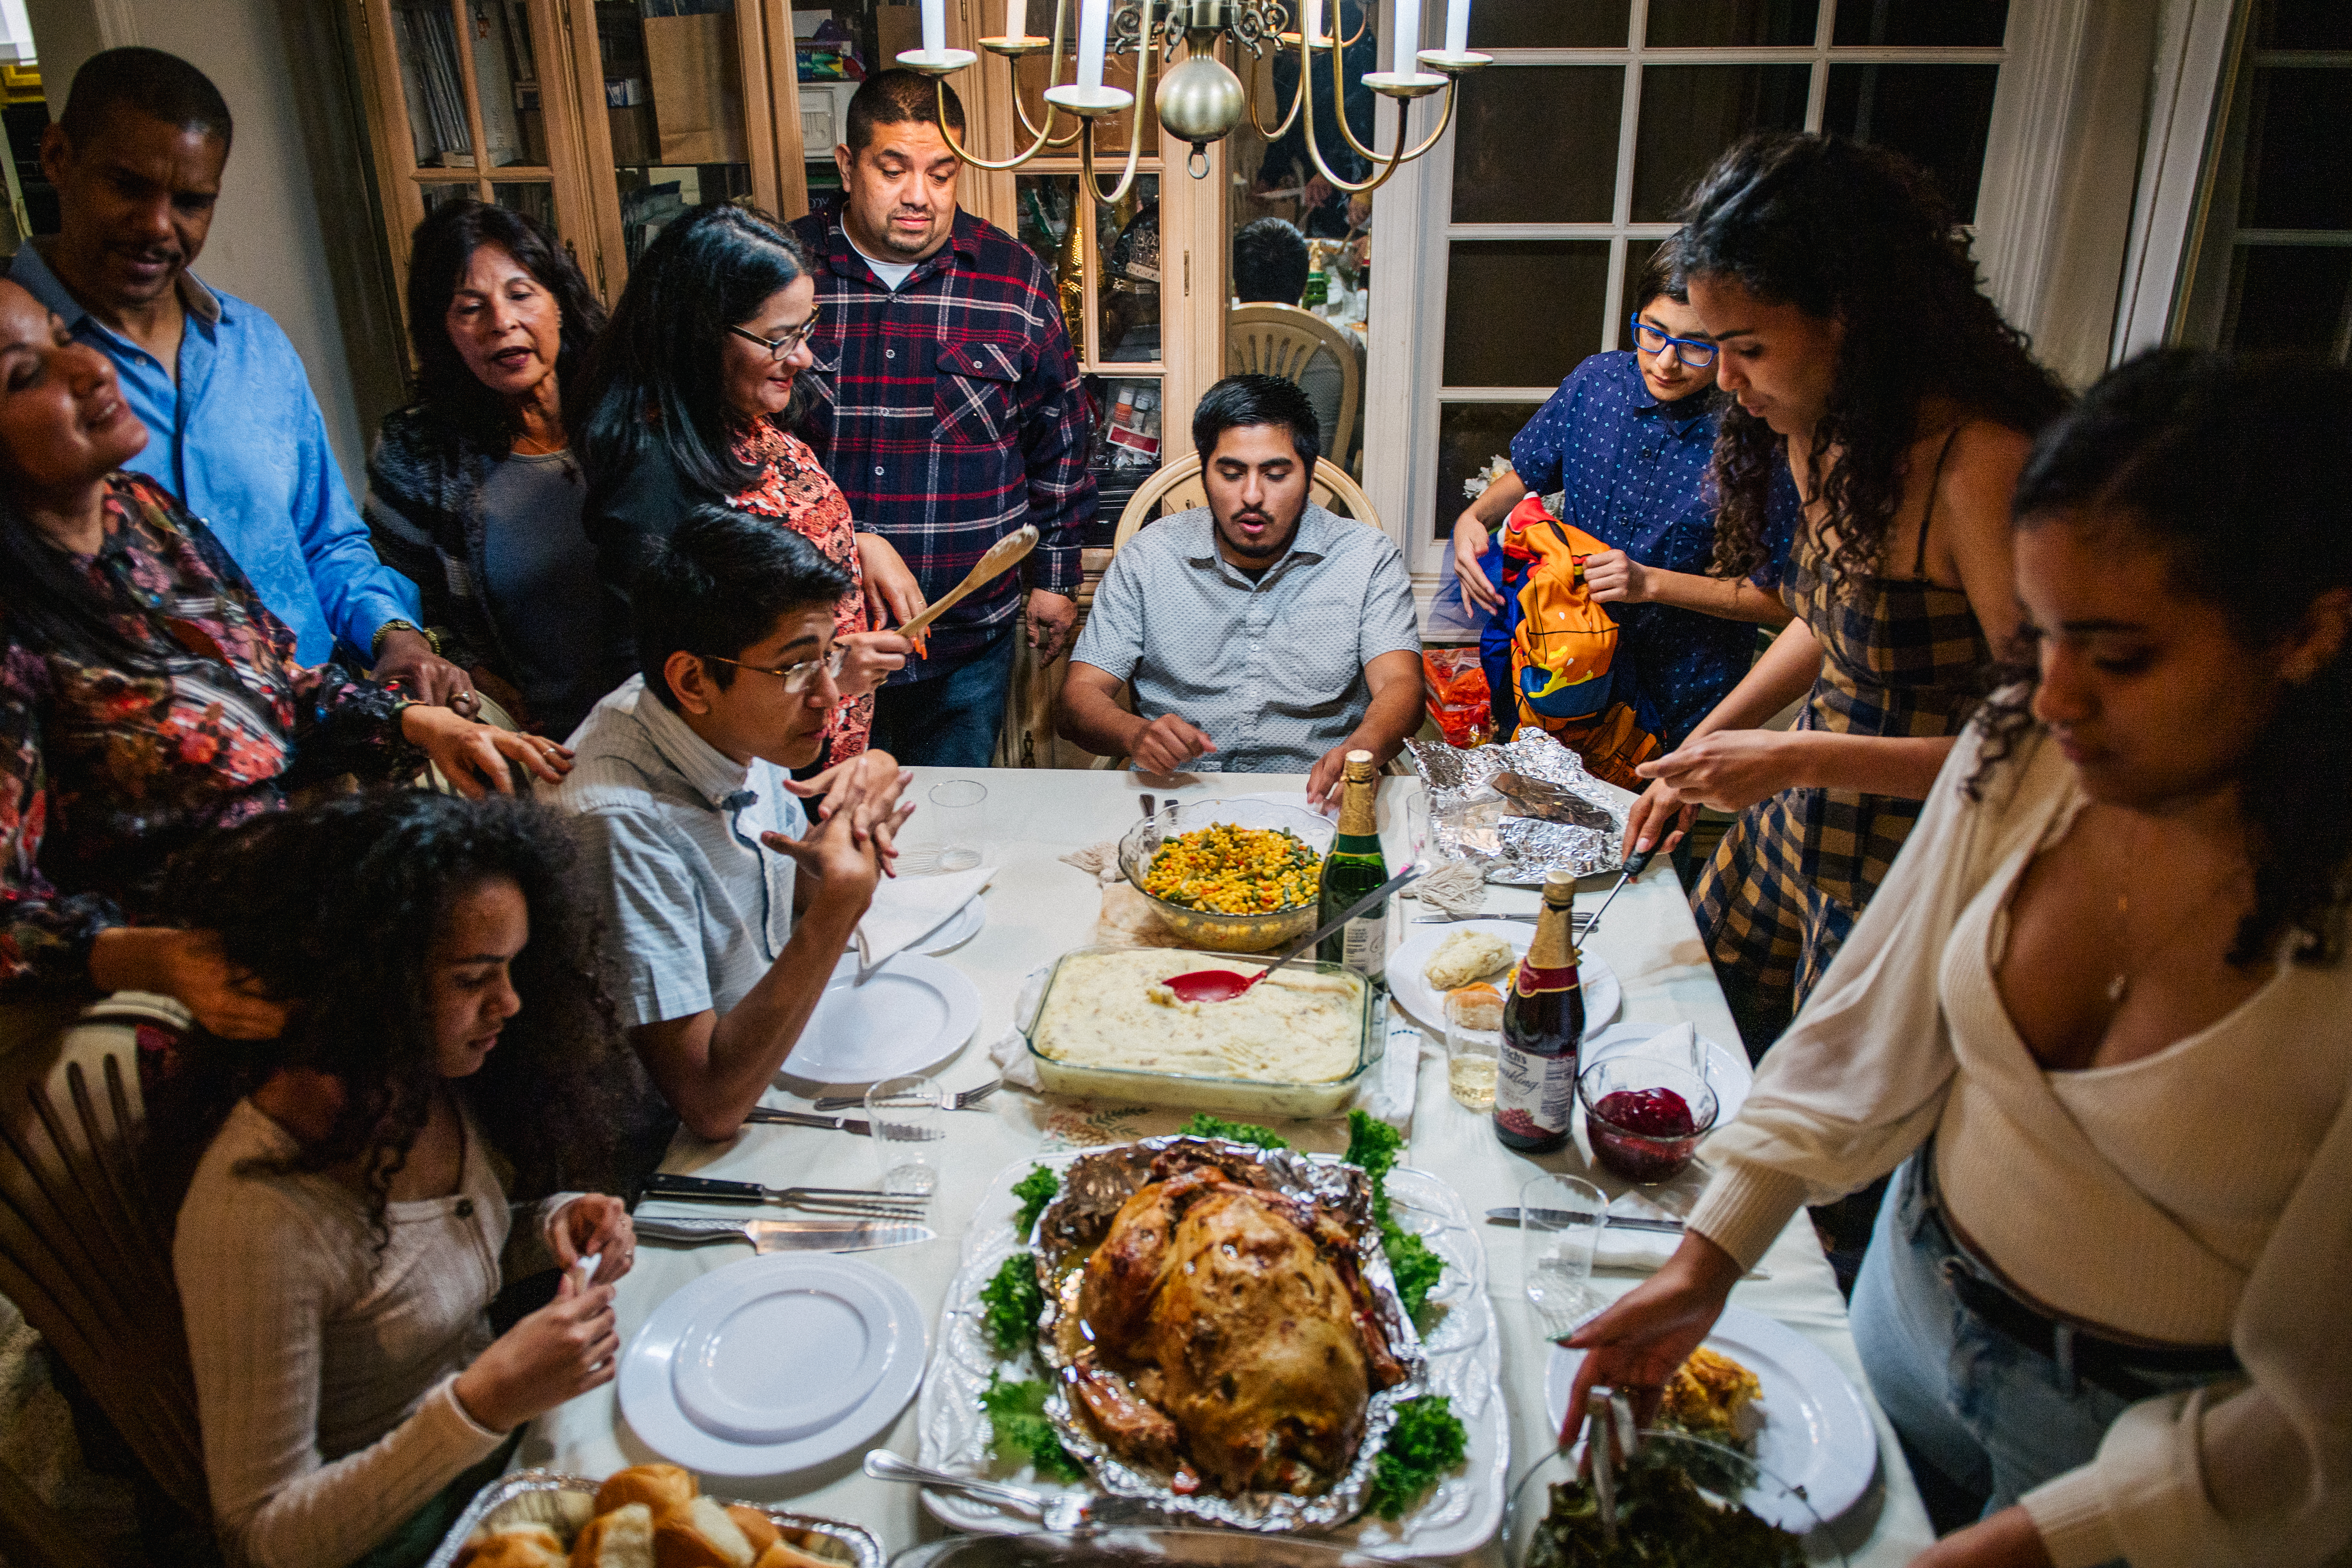 Un dîner en famille | Source : Getty Images